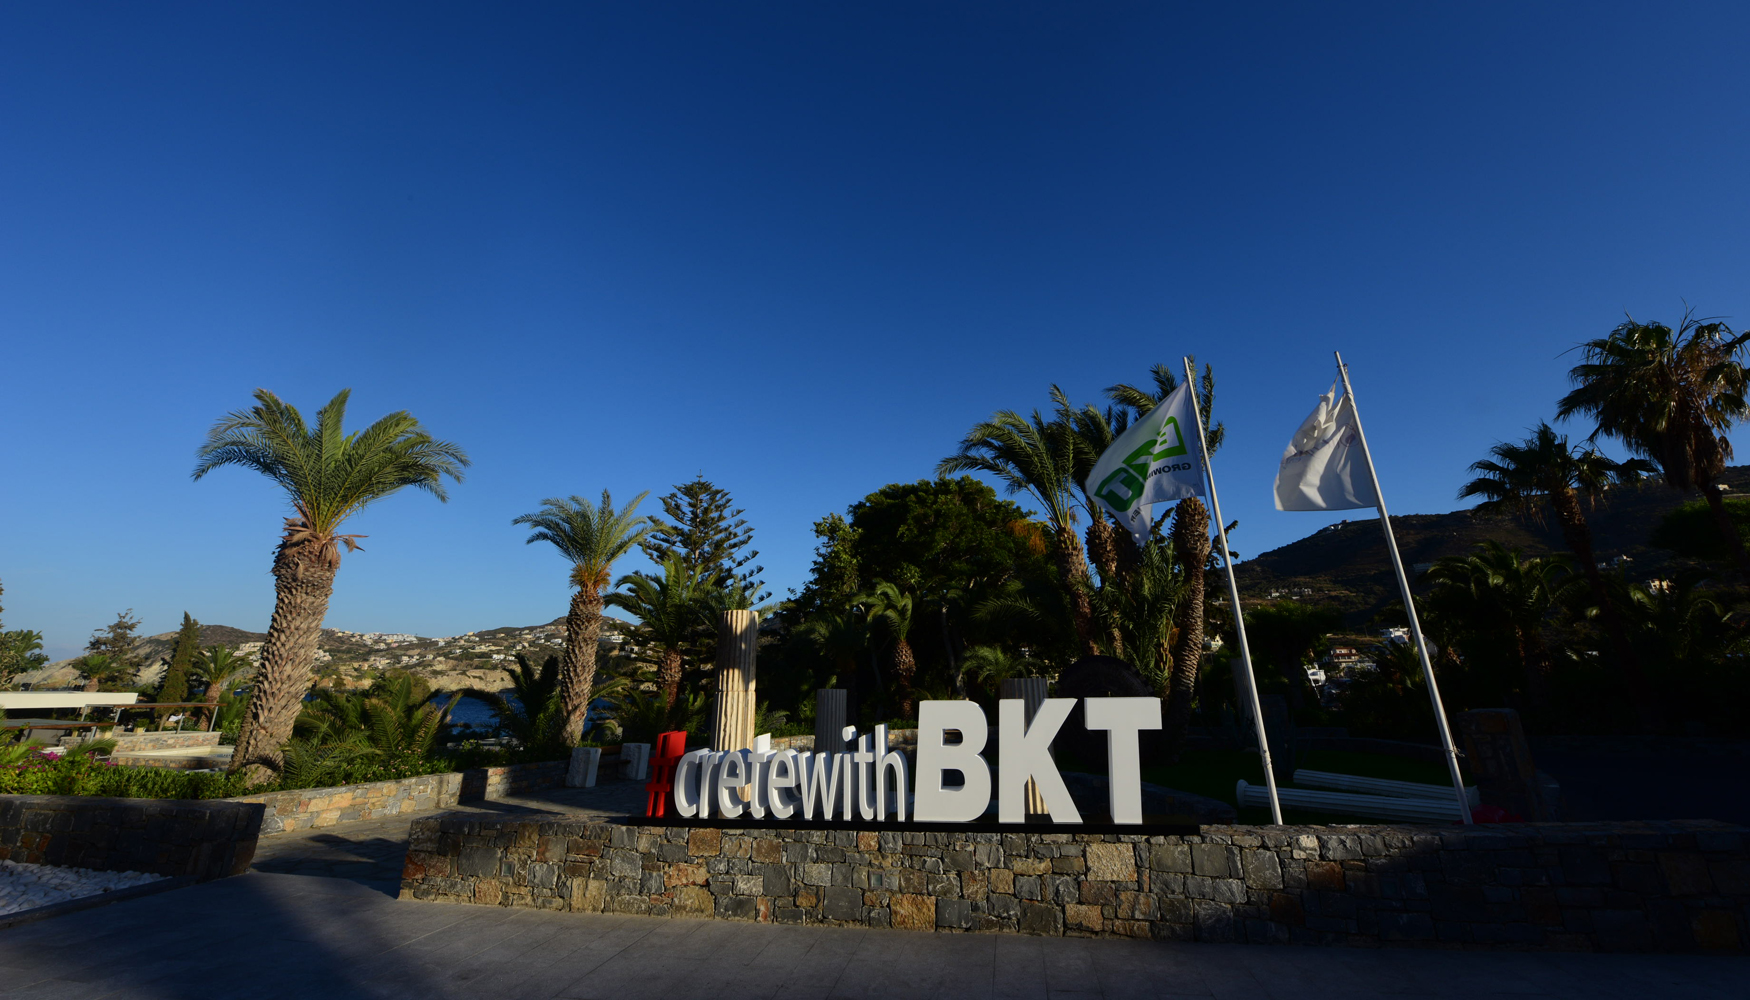 Para los actos de celebracin del 10 aniversario de Earthmax BKT cre el hashtag #CretewithBKT